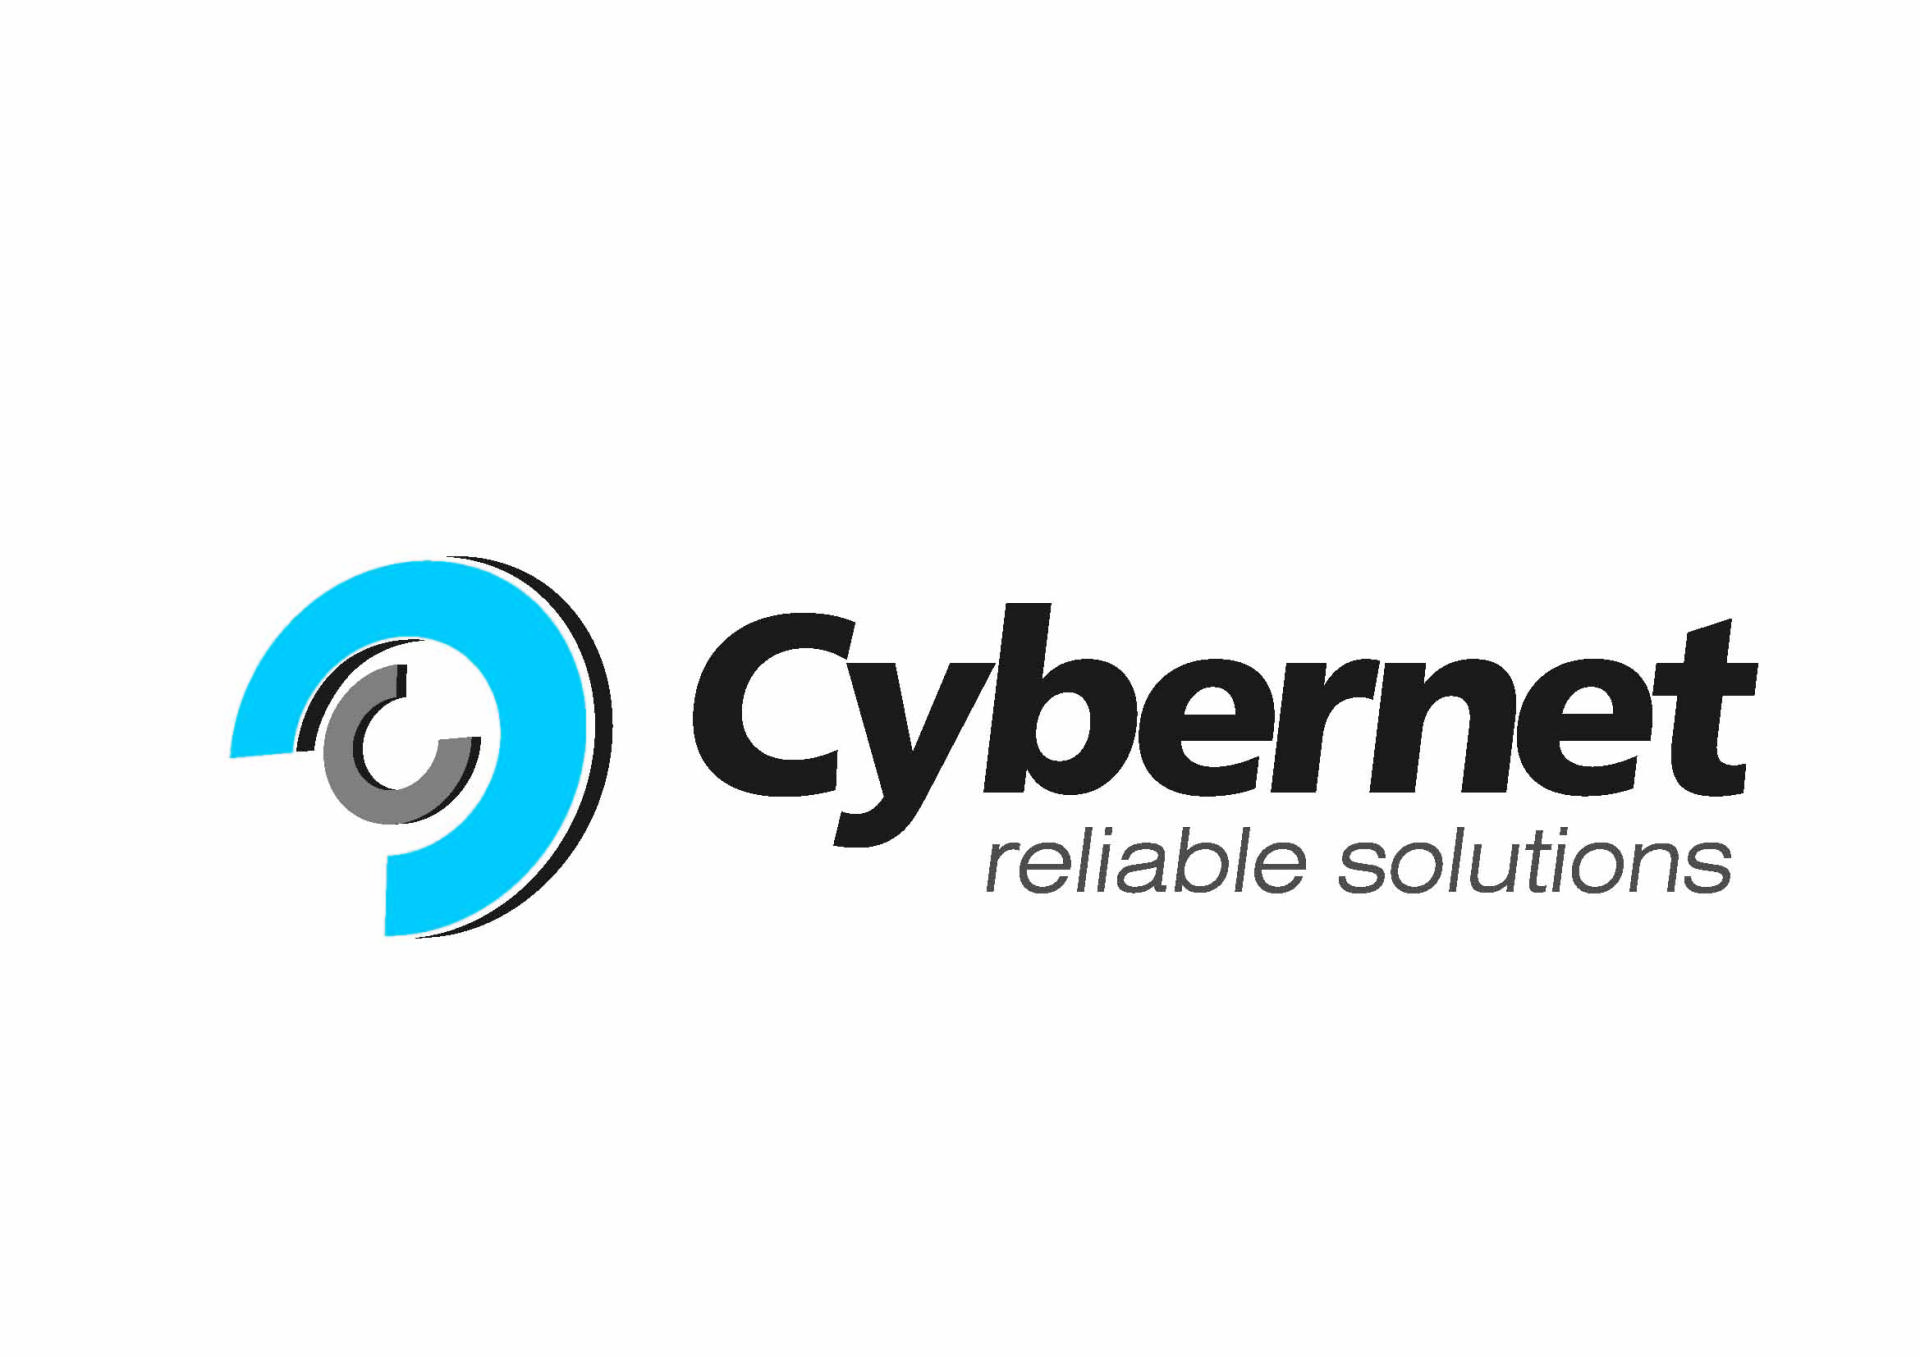 Bakıda “Cybernet” şirkətinin iştirakı ilə “Oracle Cloud Day” konfransı keçiriləcək